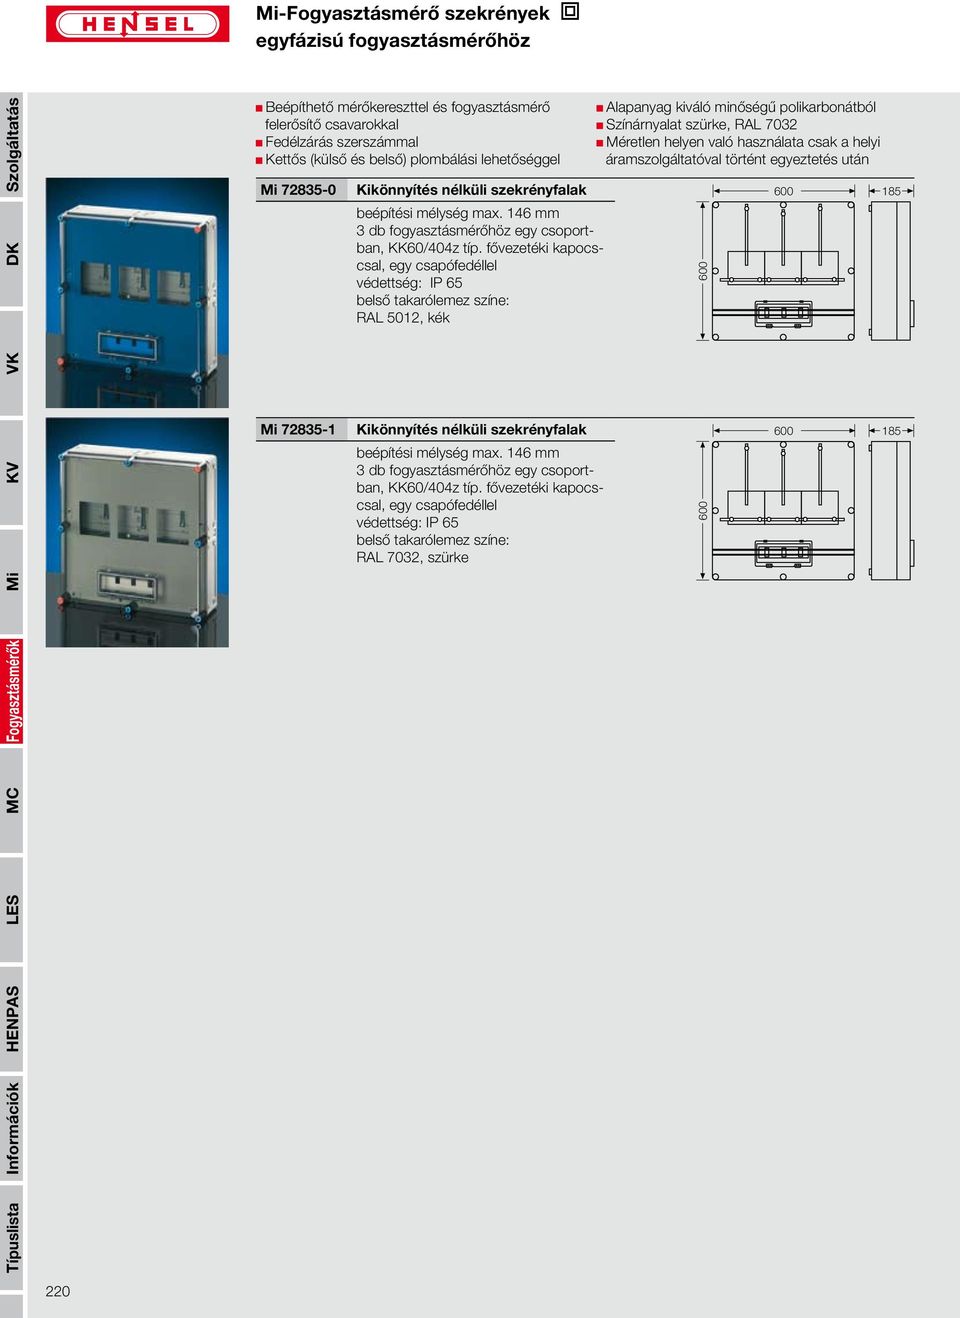 fővezetéki kapocscsal, egy csapófedéllel védettség: IP 65 Kikönnyítés nélküli szekrényfalak 3 db fogyasztásmérőhöz egy csoportban, KK60/404z típ.